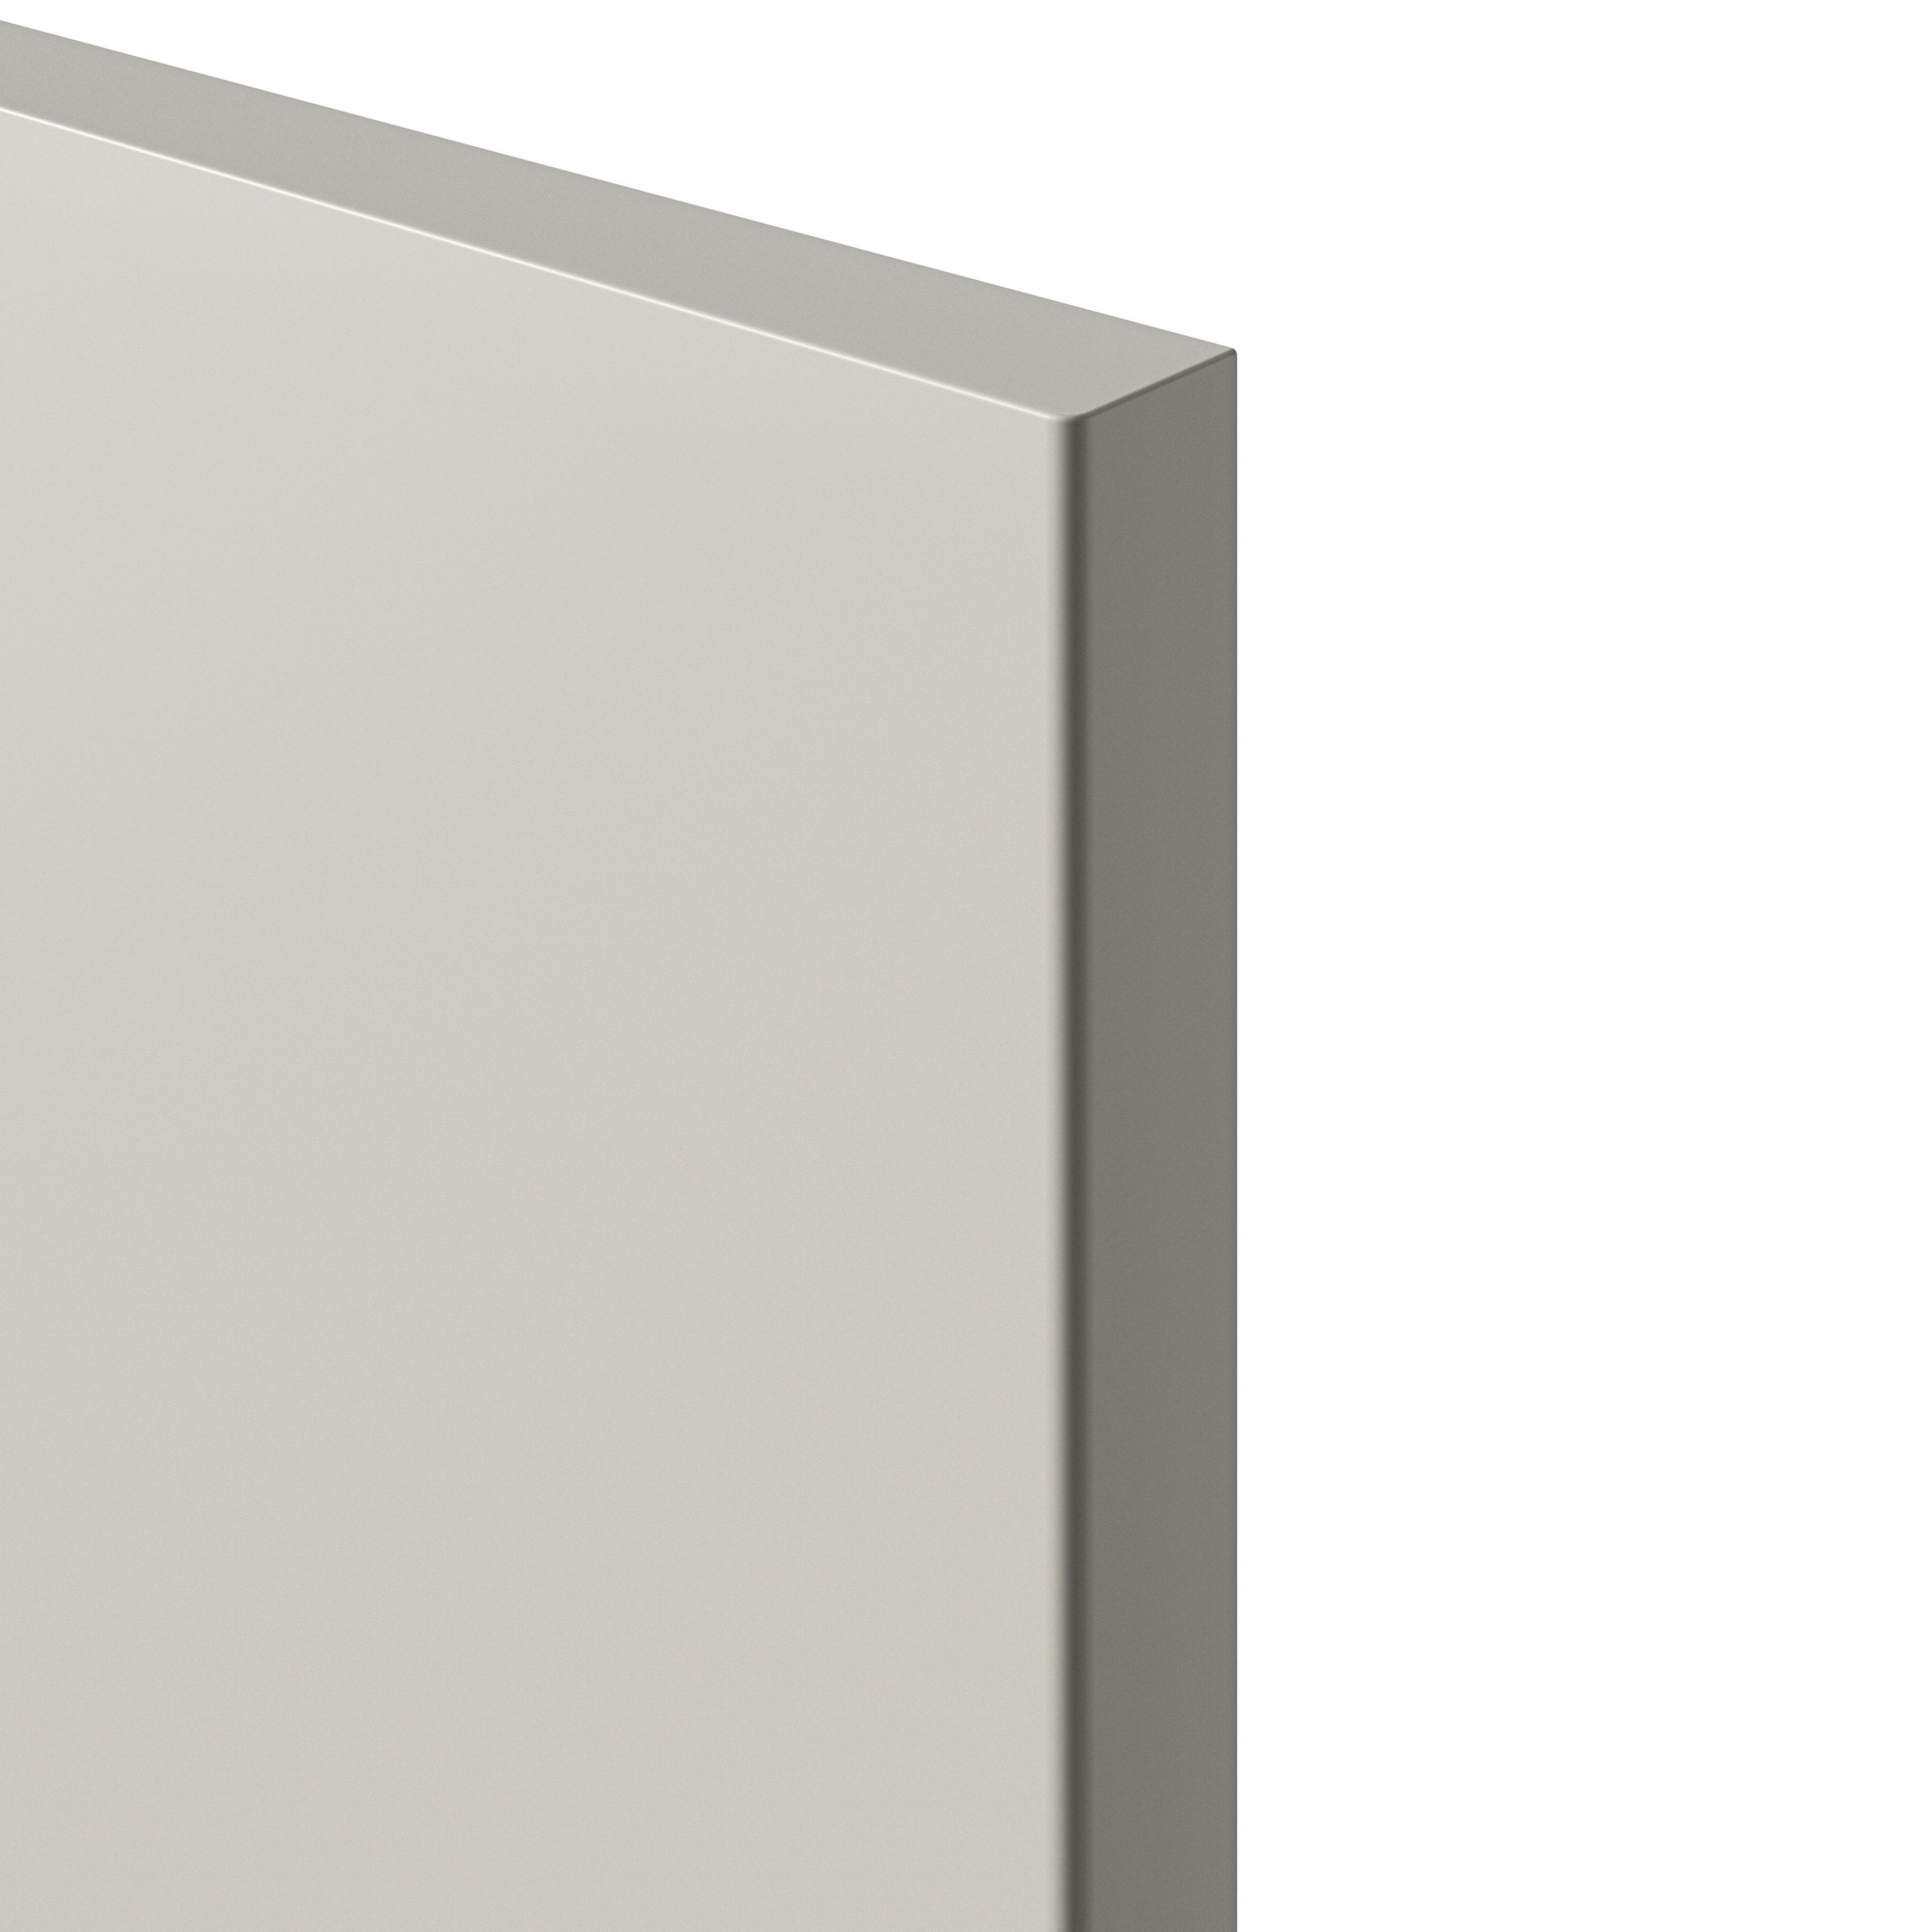 GoodHome Stevia Matt sandstone slab 70:30 Tall larder Cabinet door (W)300mm (H)1467mm (T)18mm